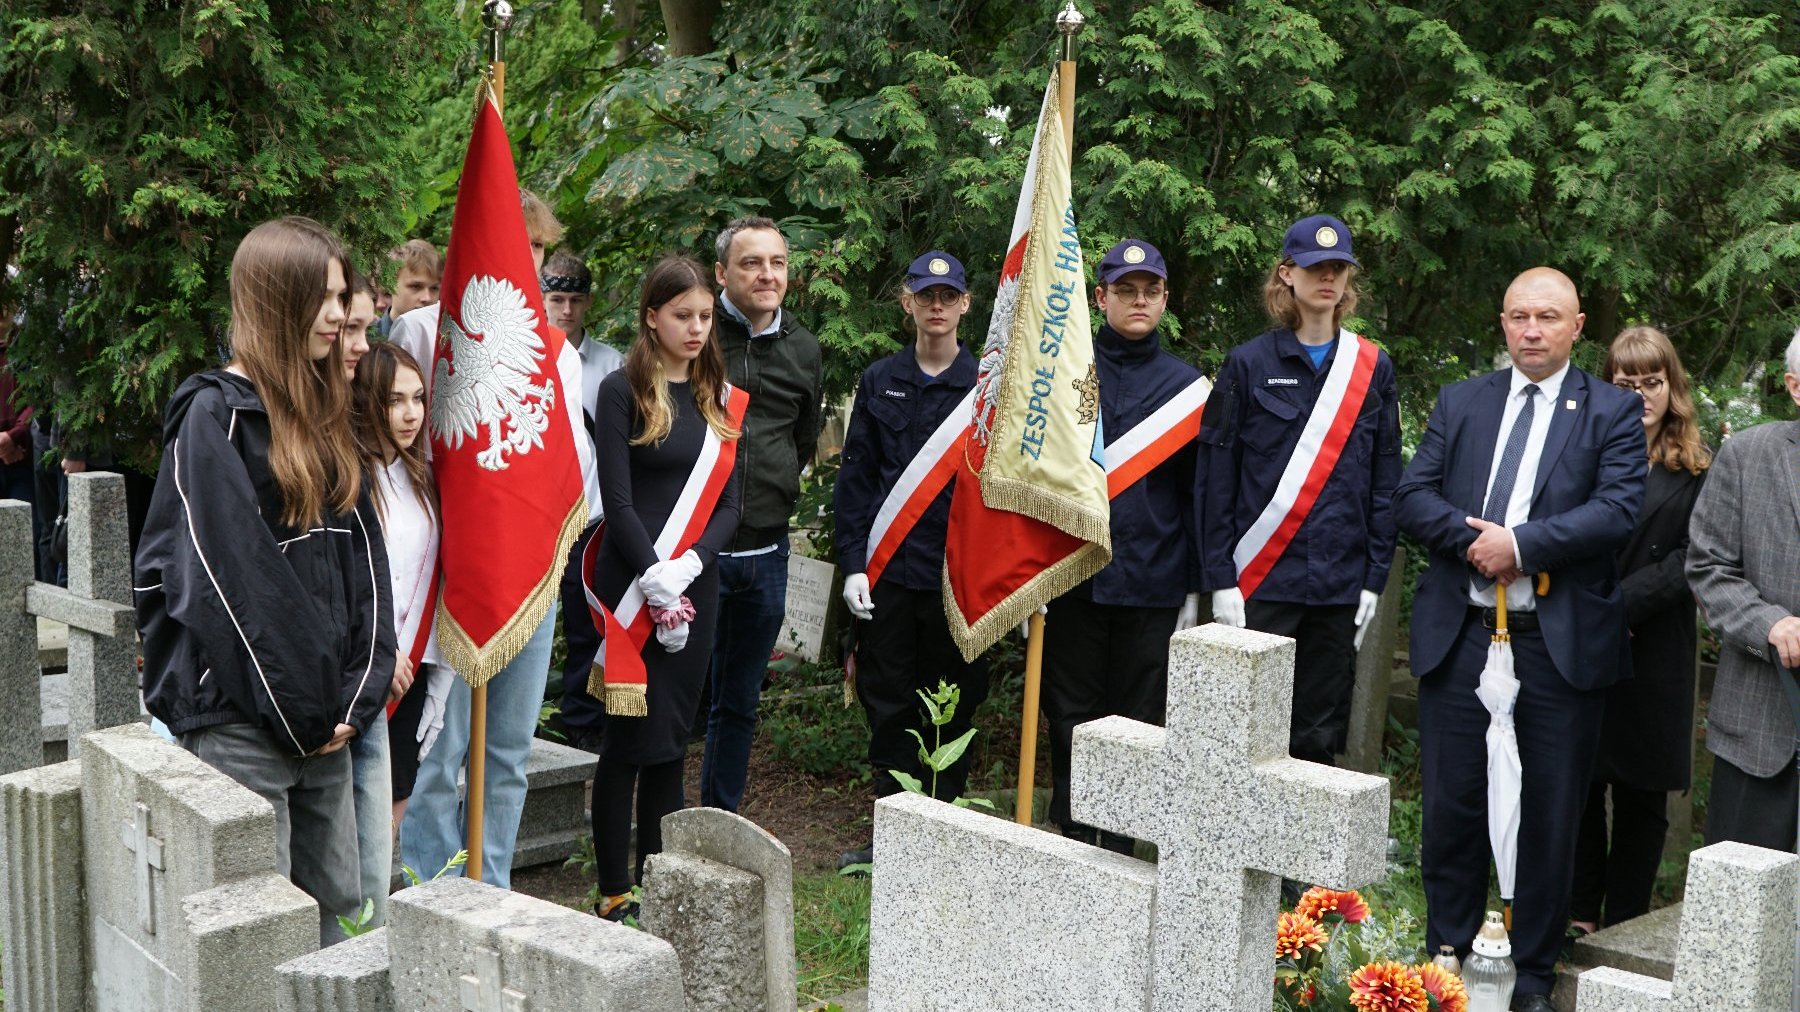 Zdjęcie przedstawia młodzież ze sztandarami stojącą przed grobami.